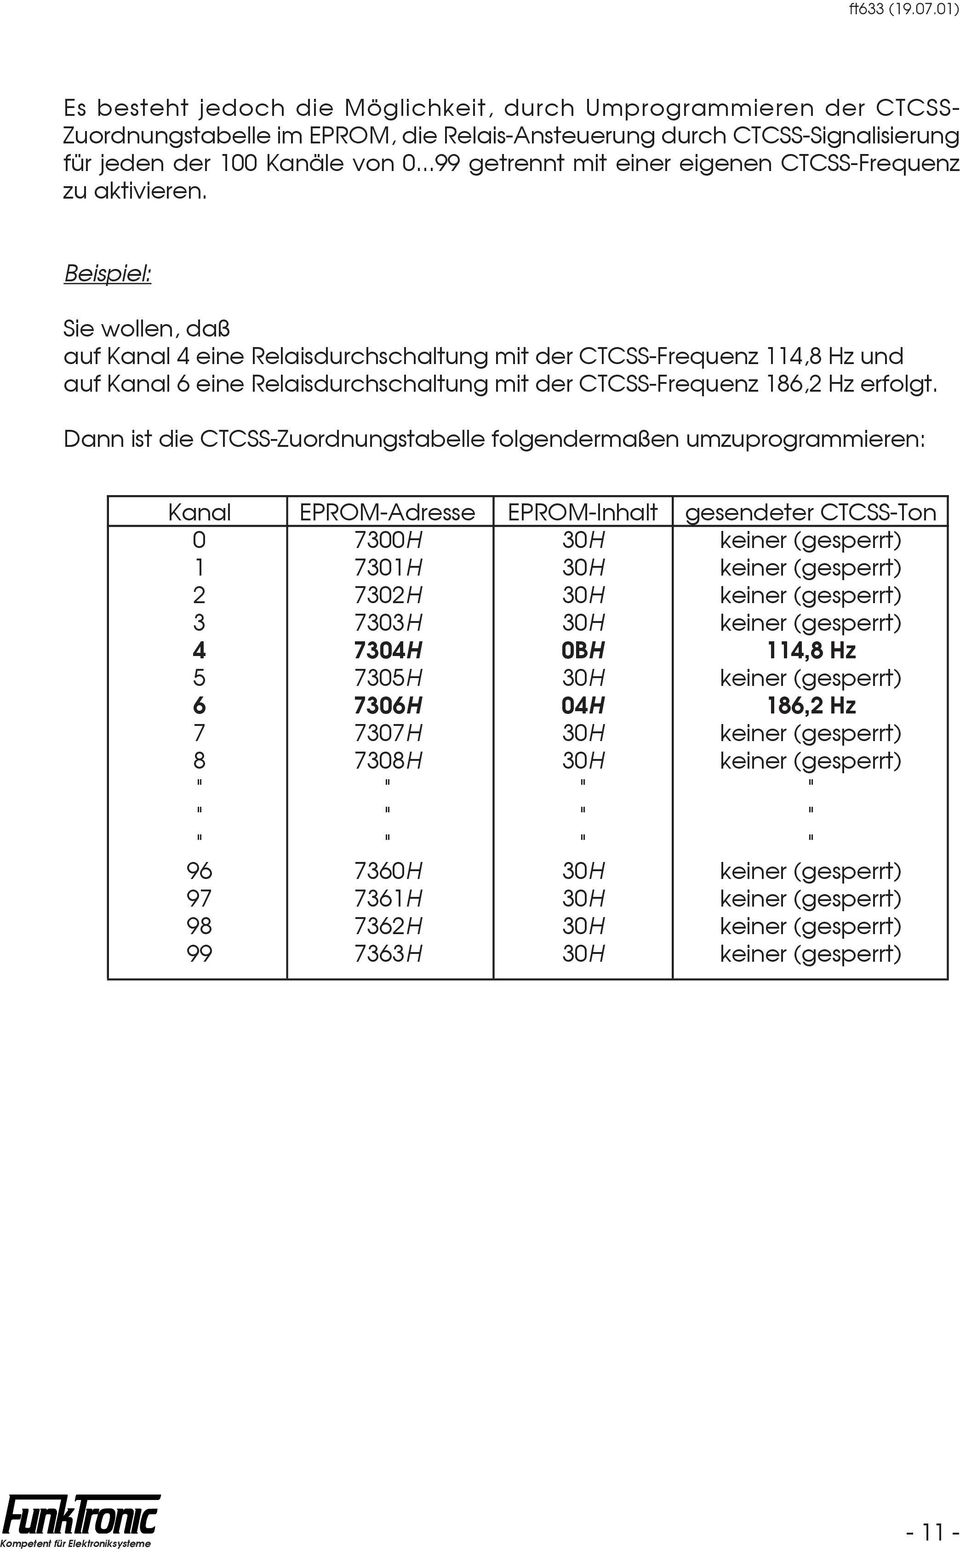 Beispiel: Sie wollen, daß auf Kanal 4 eine Relaisdurchschaltung mit der CTCSS-Frequenz 114,8 Hz und auf Kanal 6 eine Relaisdurchschaltung mit der CTCSS-Frequenz 186,2 Hz erfolgt.